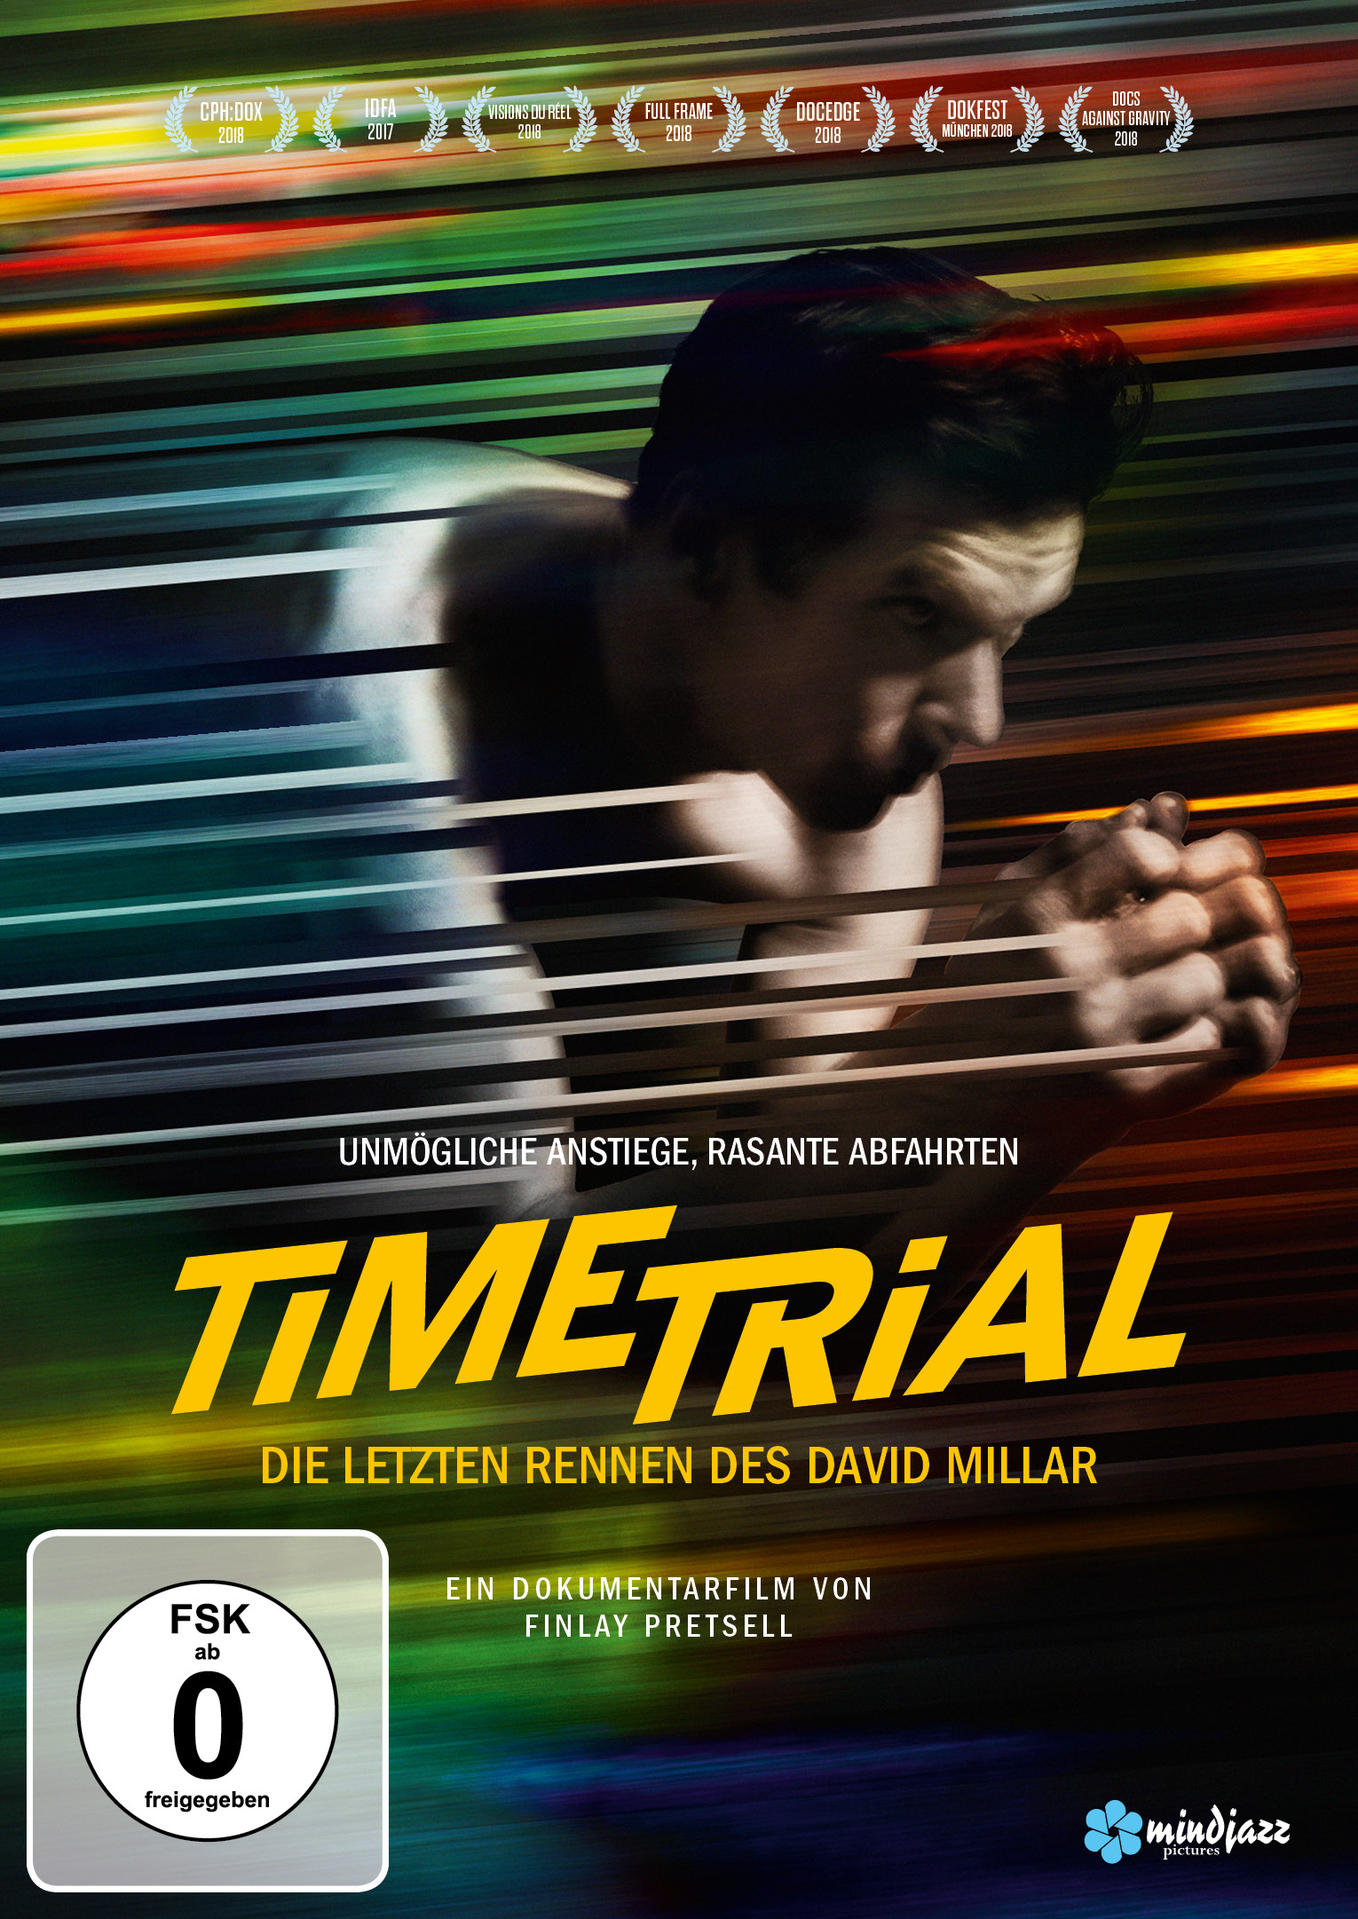 Time Trial - Die DVD Rennen letzten David des Millar